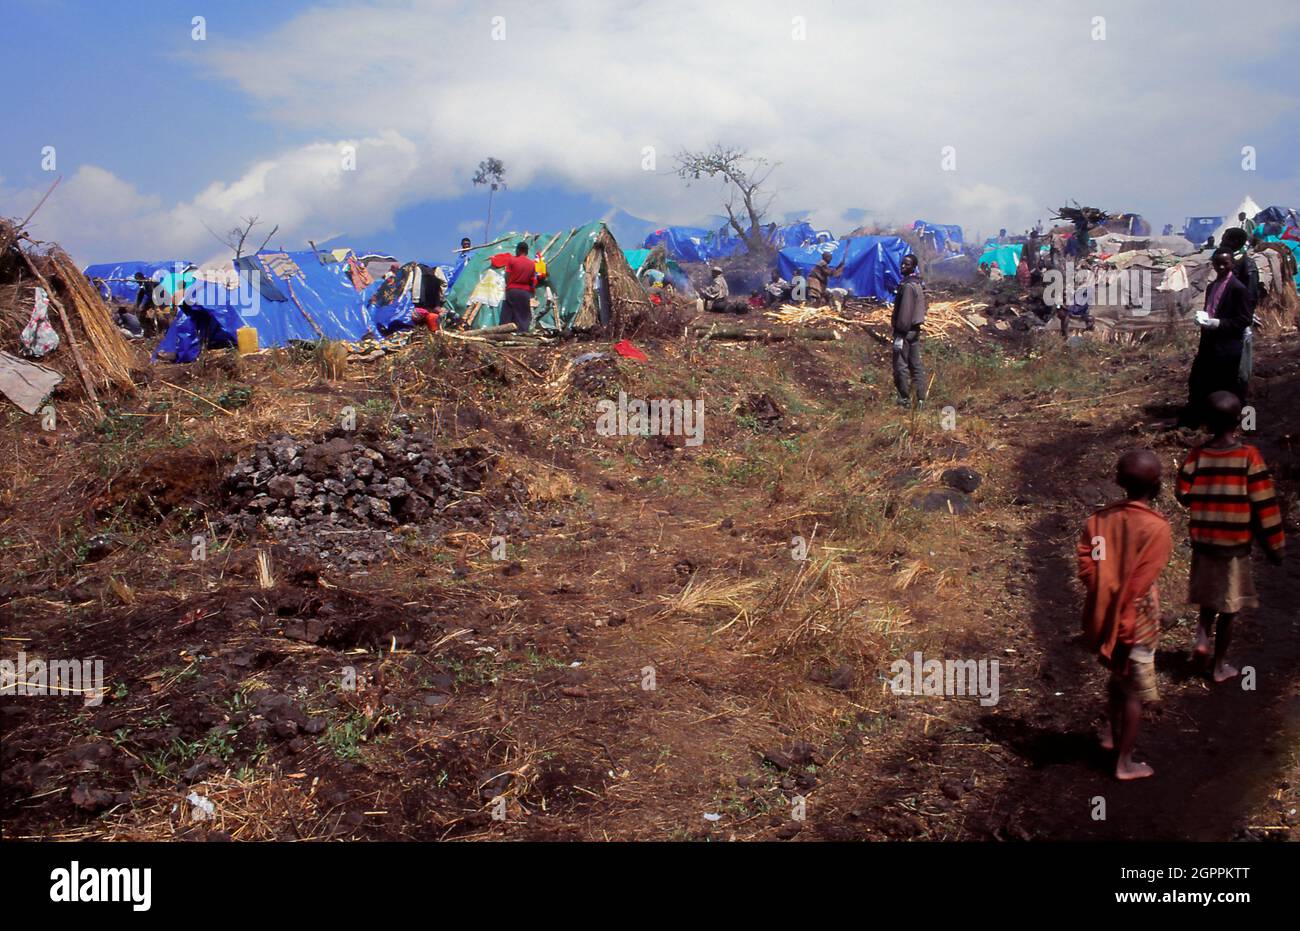 Les réfugiés rwandais fuyant le génocide et la guerre civile au Rwanda voisin attendent dans un camp de réfugiés de Goma, en République démocratique du Congo. Banque D'Images